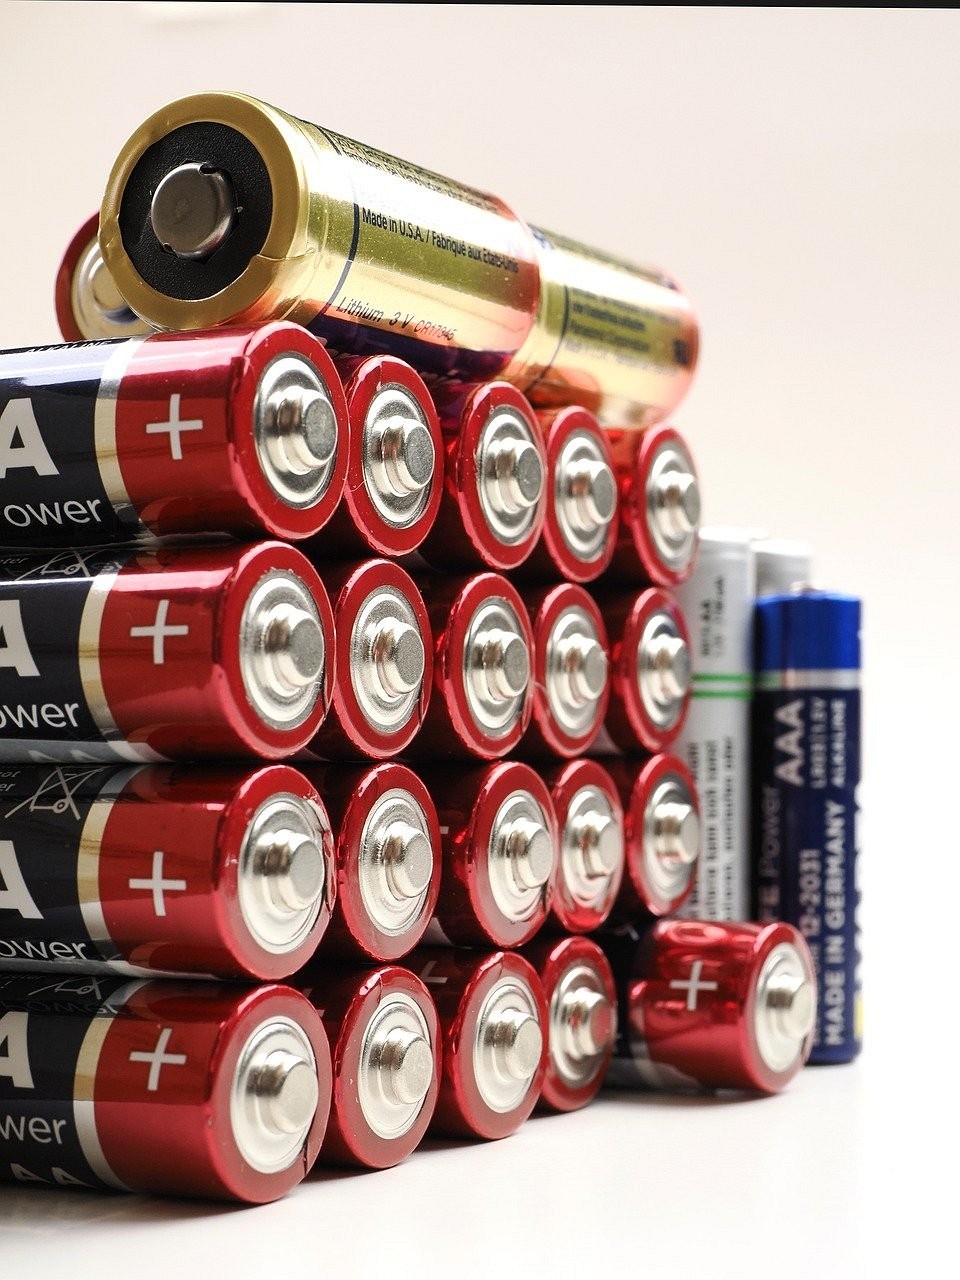 Какие типы батареек бывают: разбираемся в формах, названиях и составах4